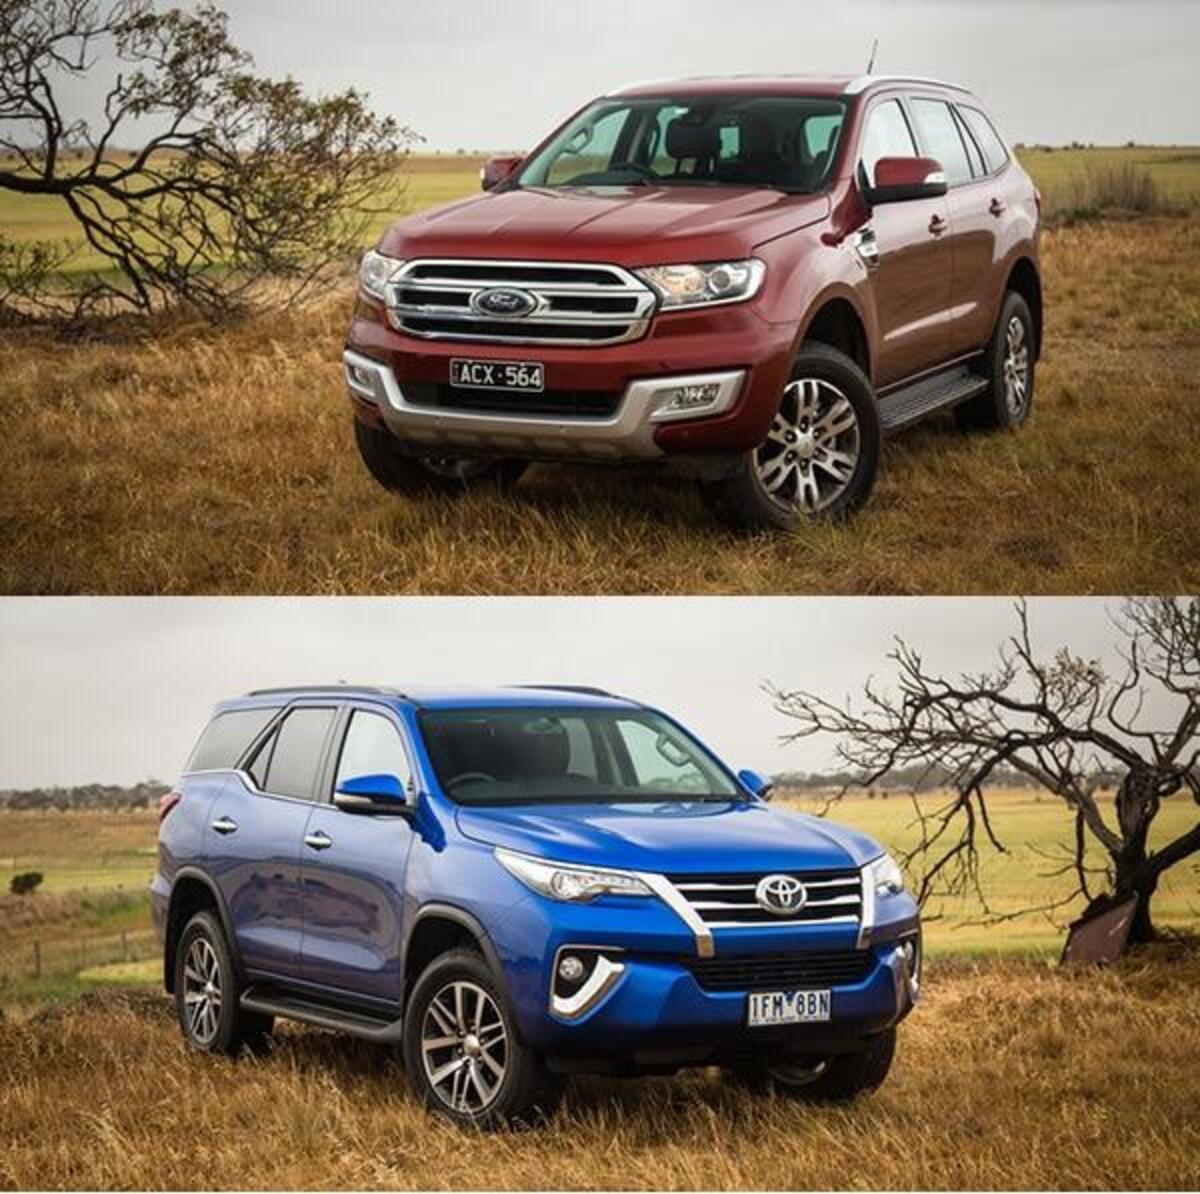 Toyota Fortuner 2017 và Ford Everest 2016 về động cơ